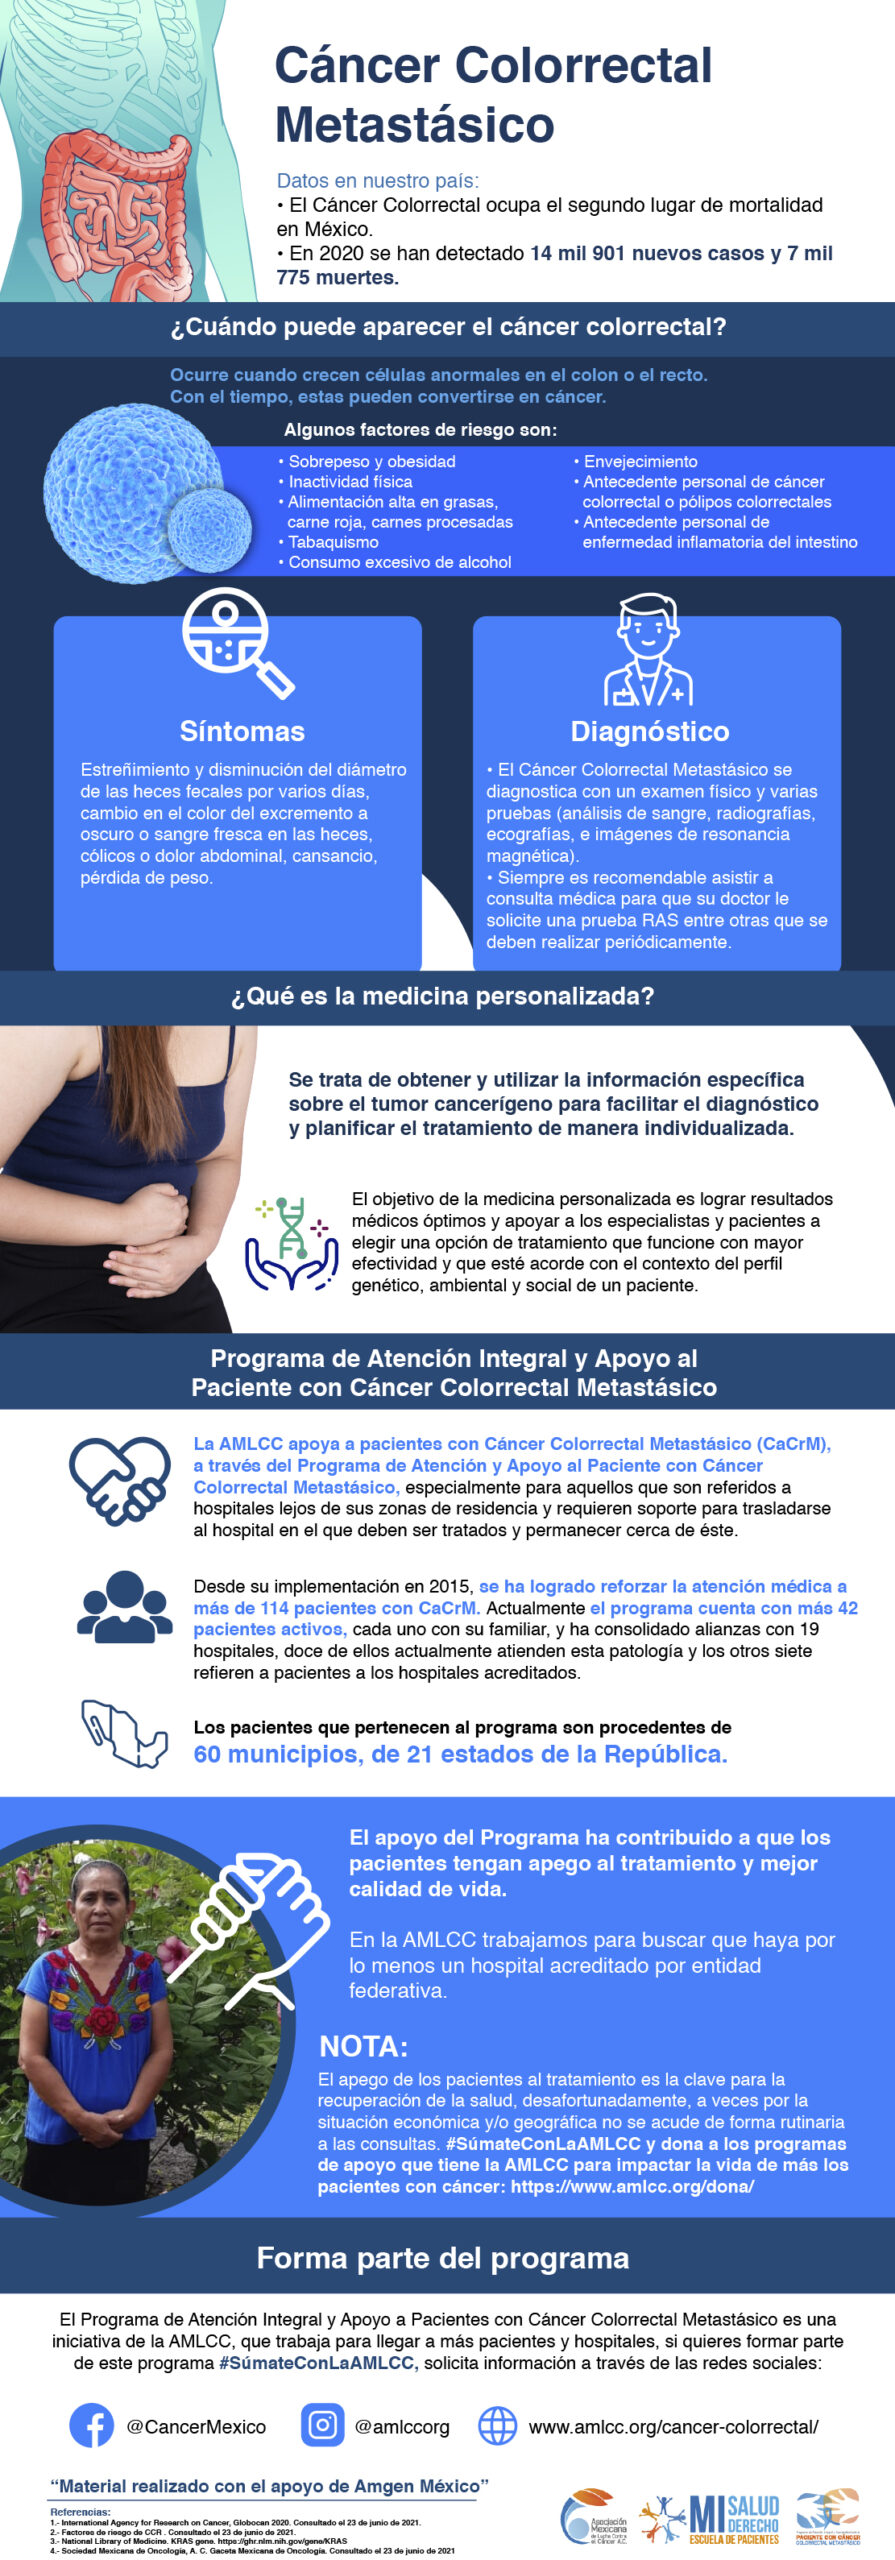 El cáncer colorrectal es la segunda causa principal de muerte por cáncer en México, después del cáncer de mama.